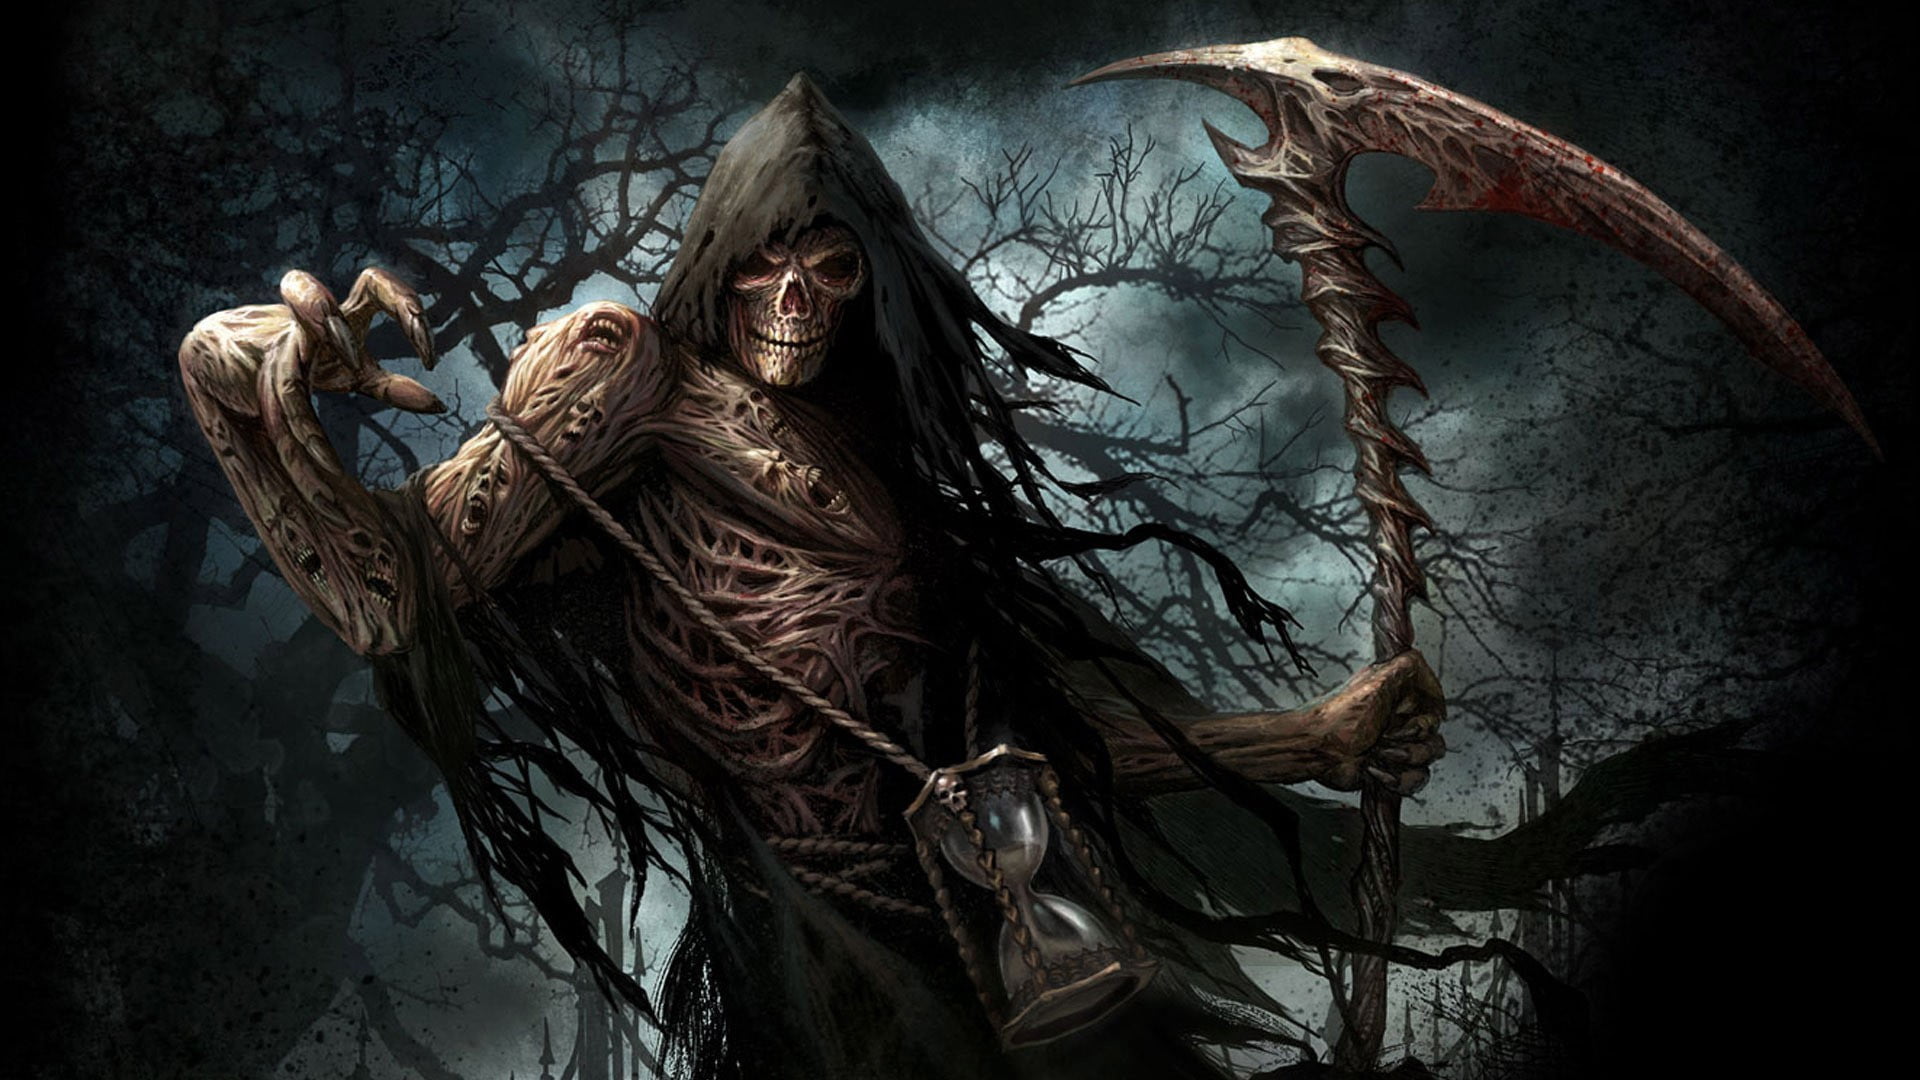 Grim Reaper illustration, undead, fantasy art, skull, hourglasses